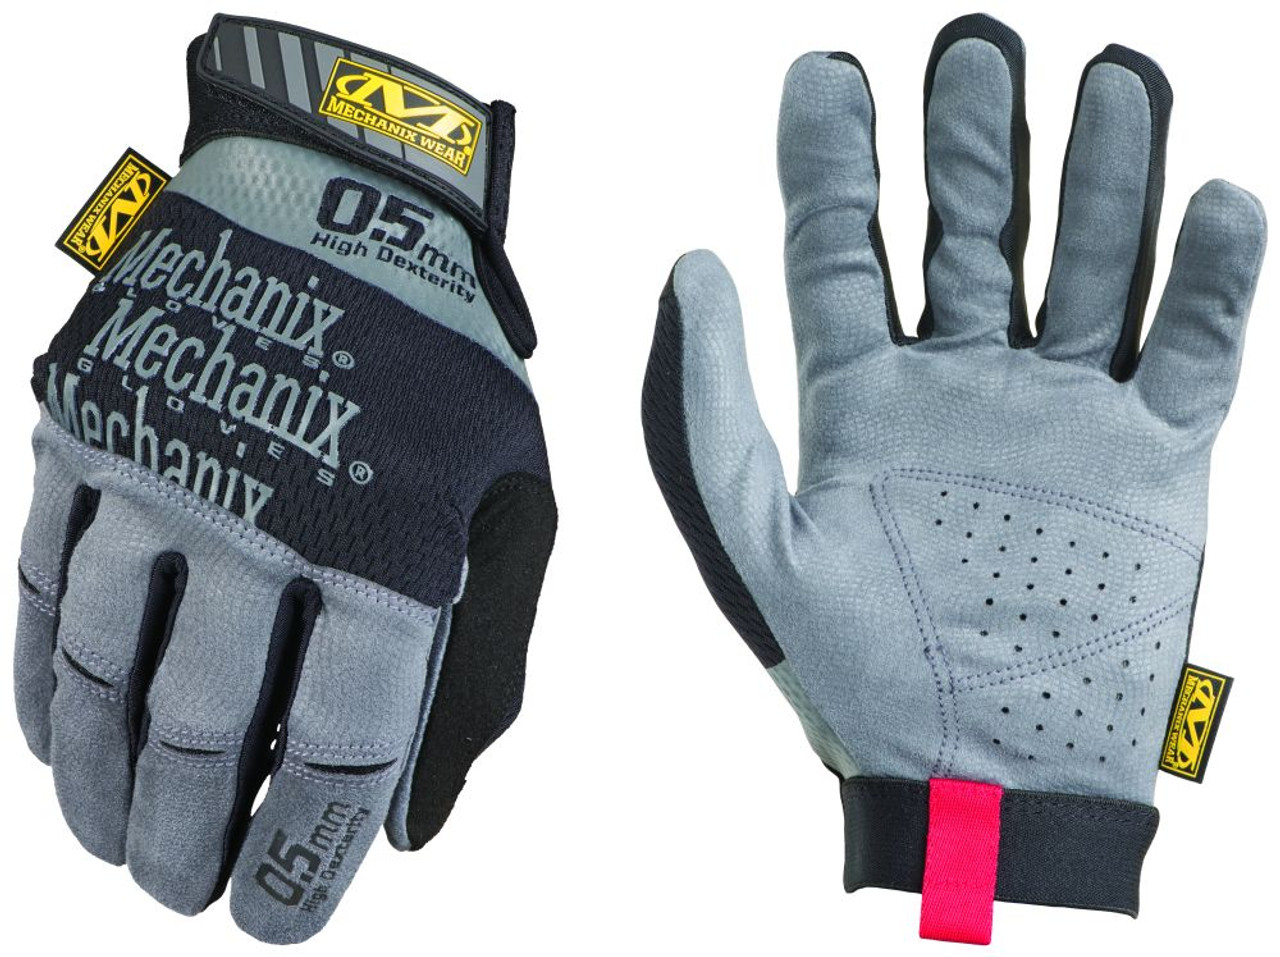 Mechanix Wear MSD-05 Mechanics Work Gloves - Pair